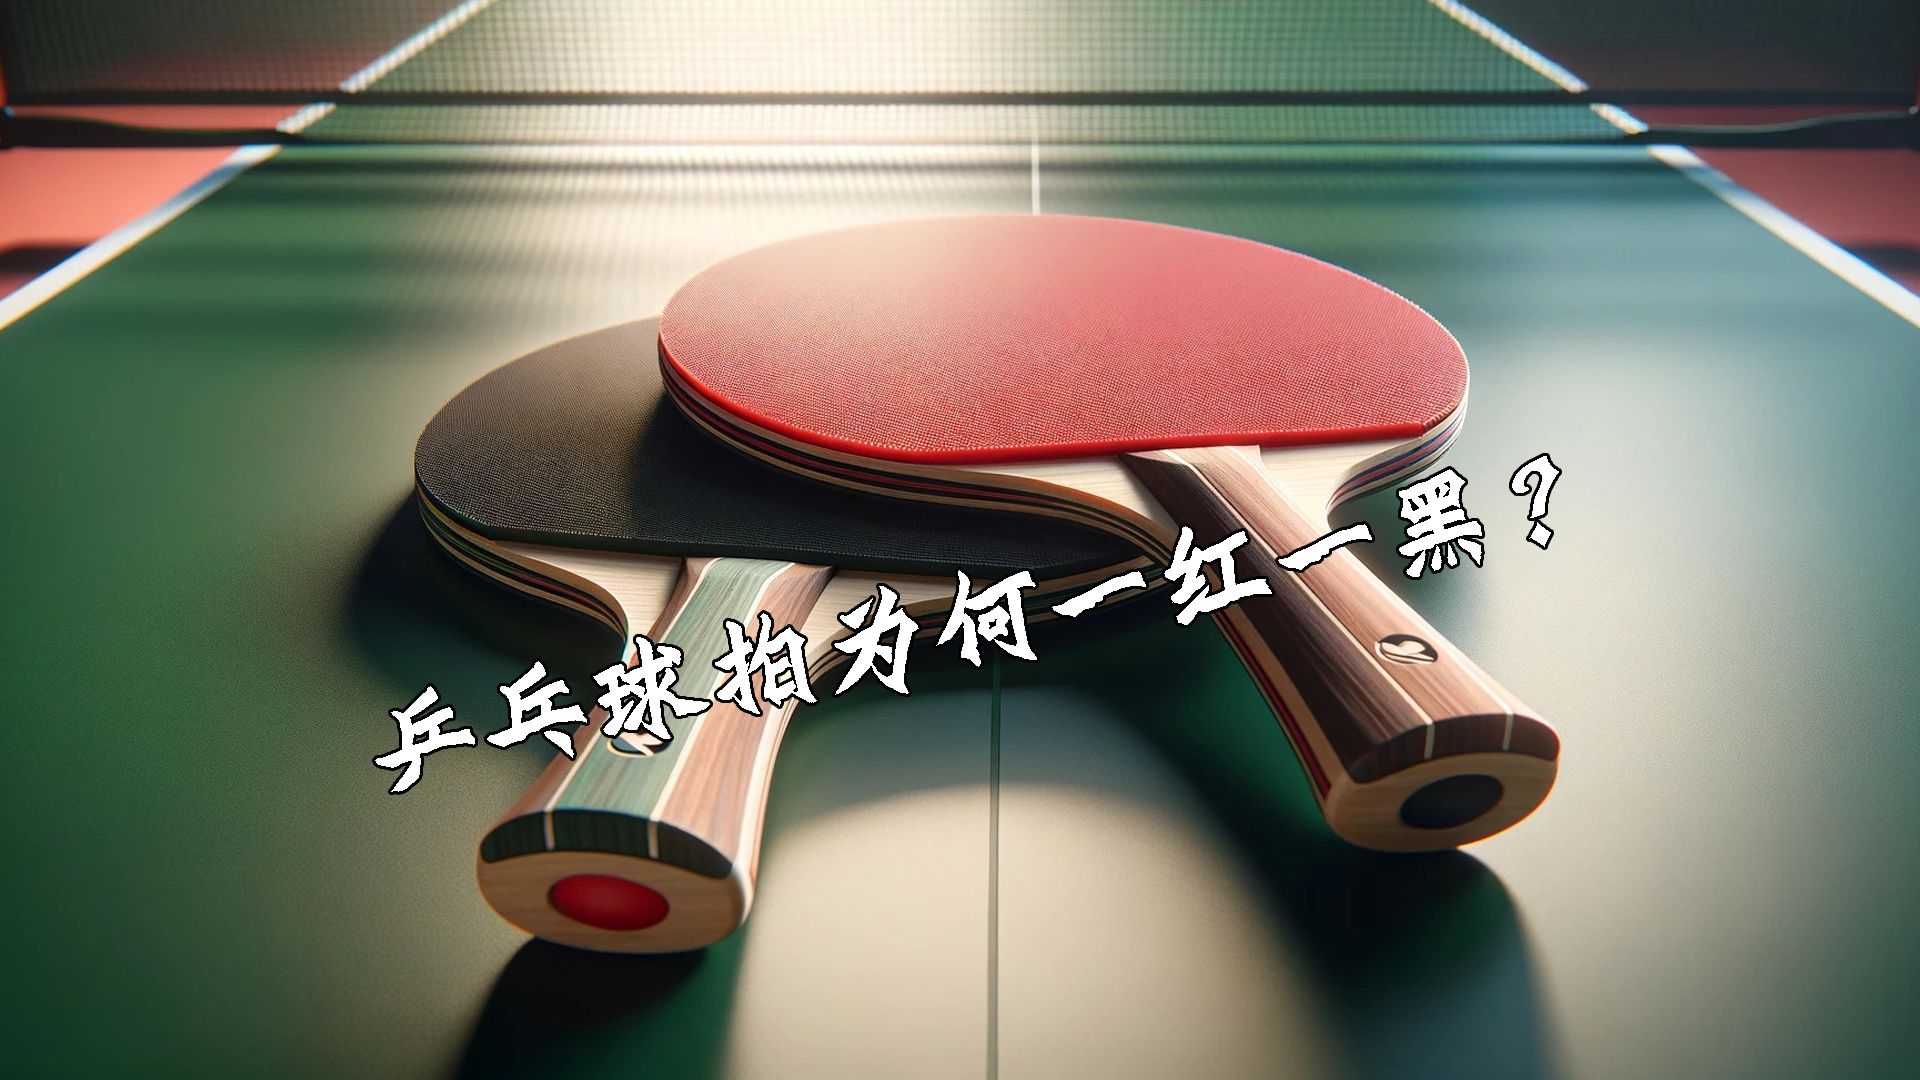 乒乓球拍为何一红一黑？蔡振华创转胶皮战术，致国际乒联修改规则